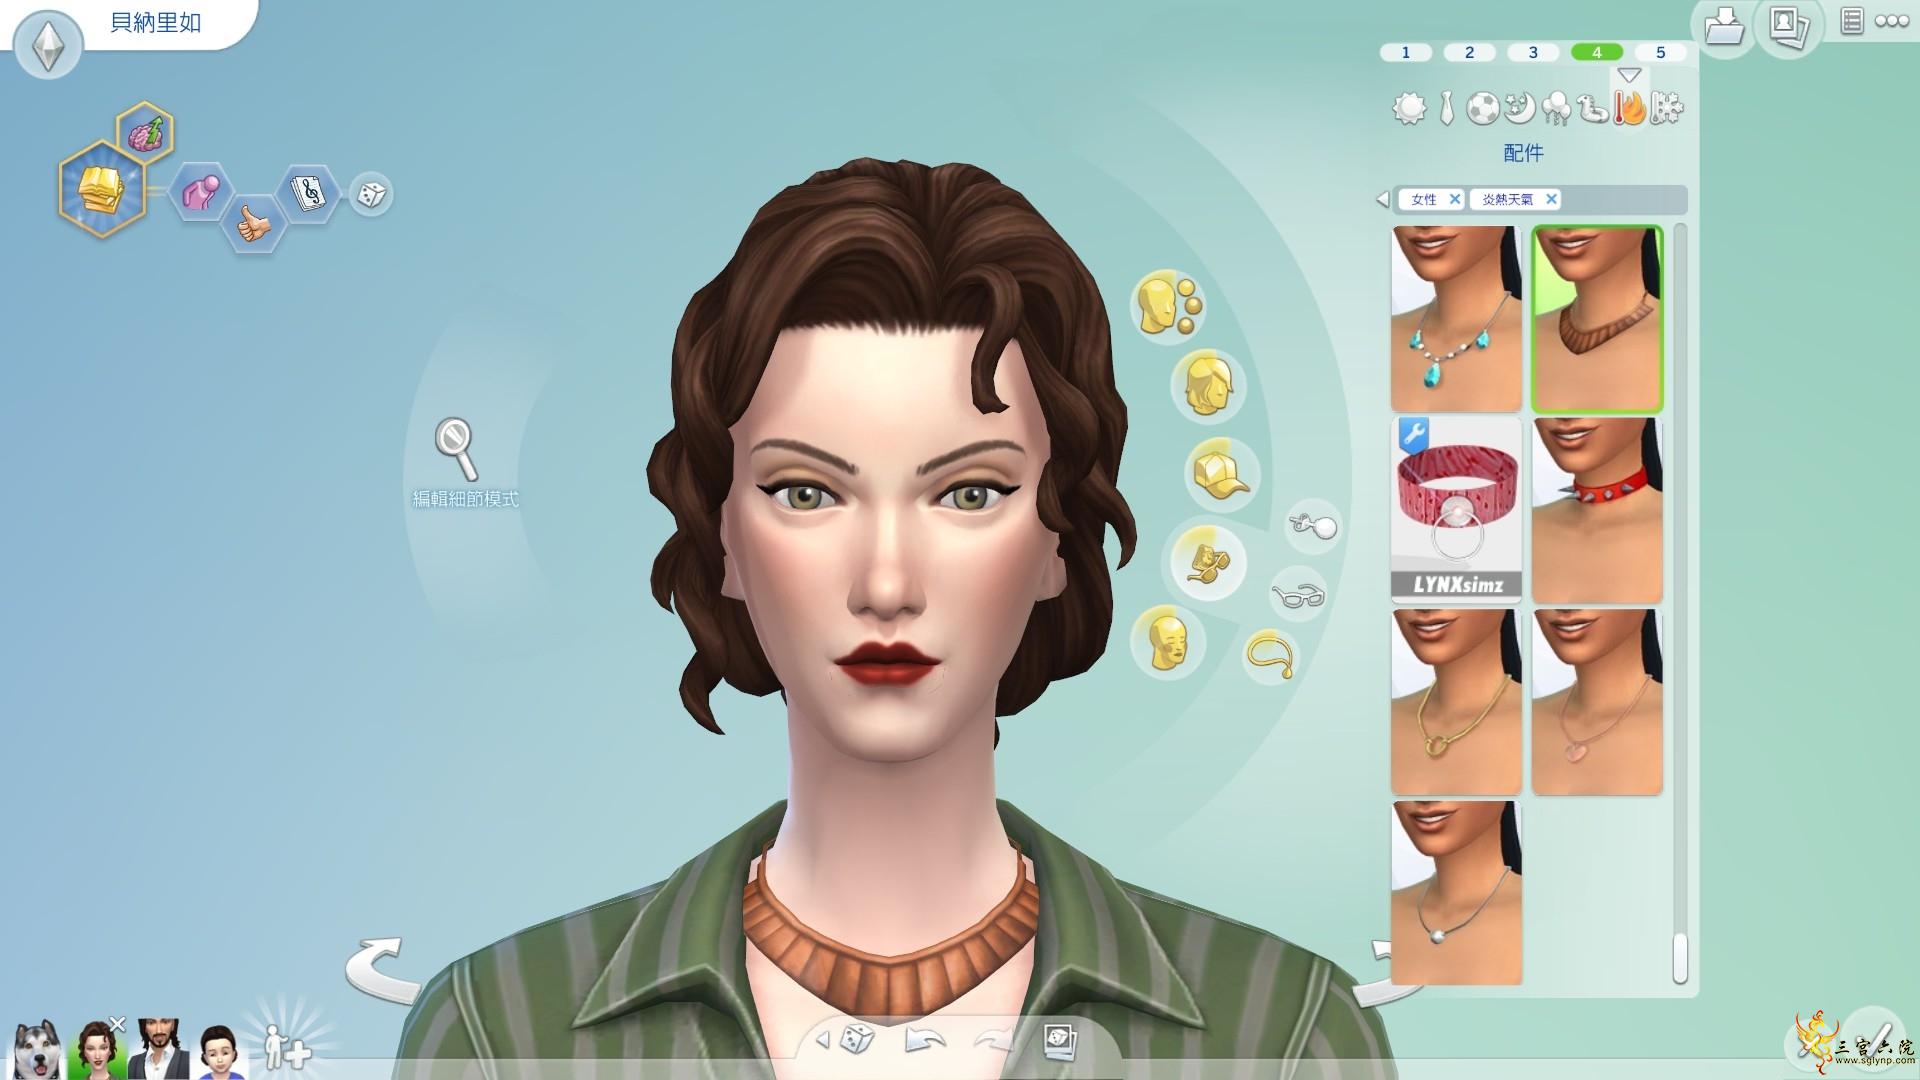 Sims 4 Screenshot 2021.07.17 - 18.49.36.06.png